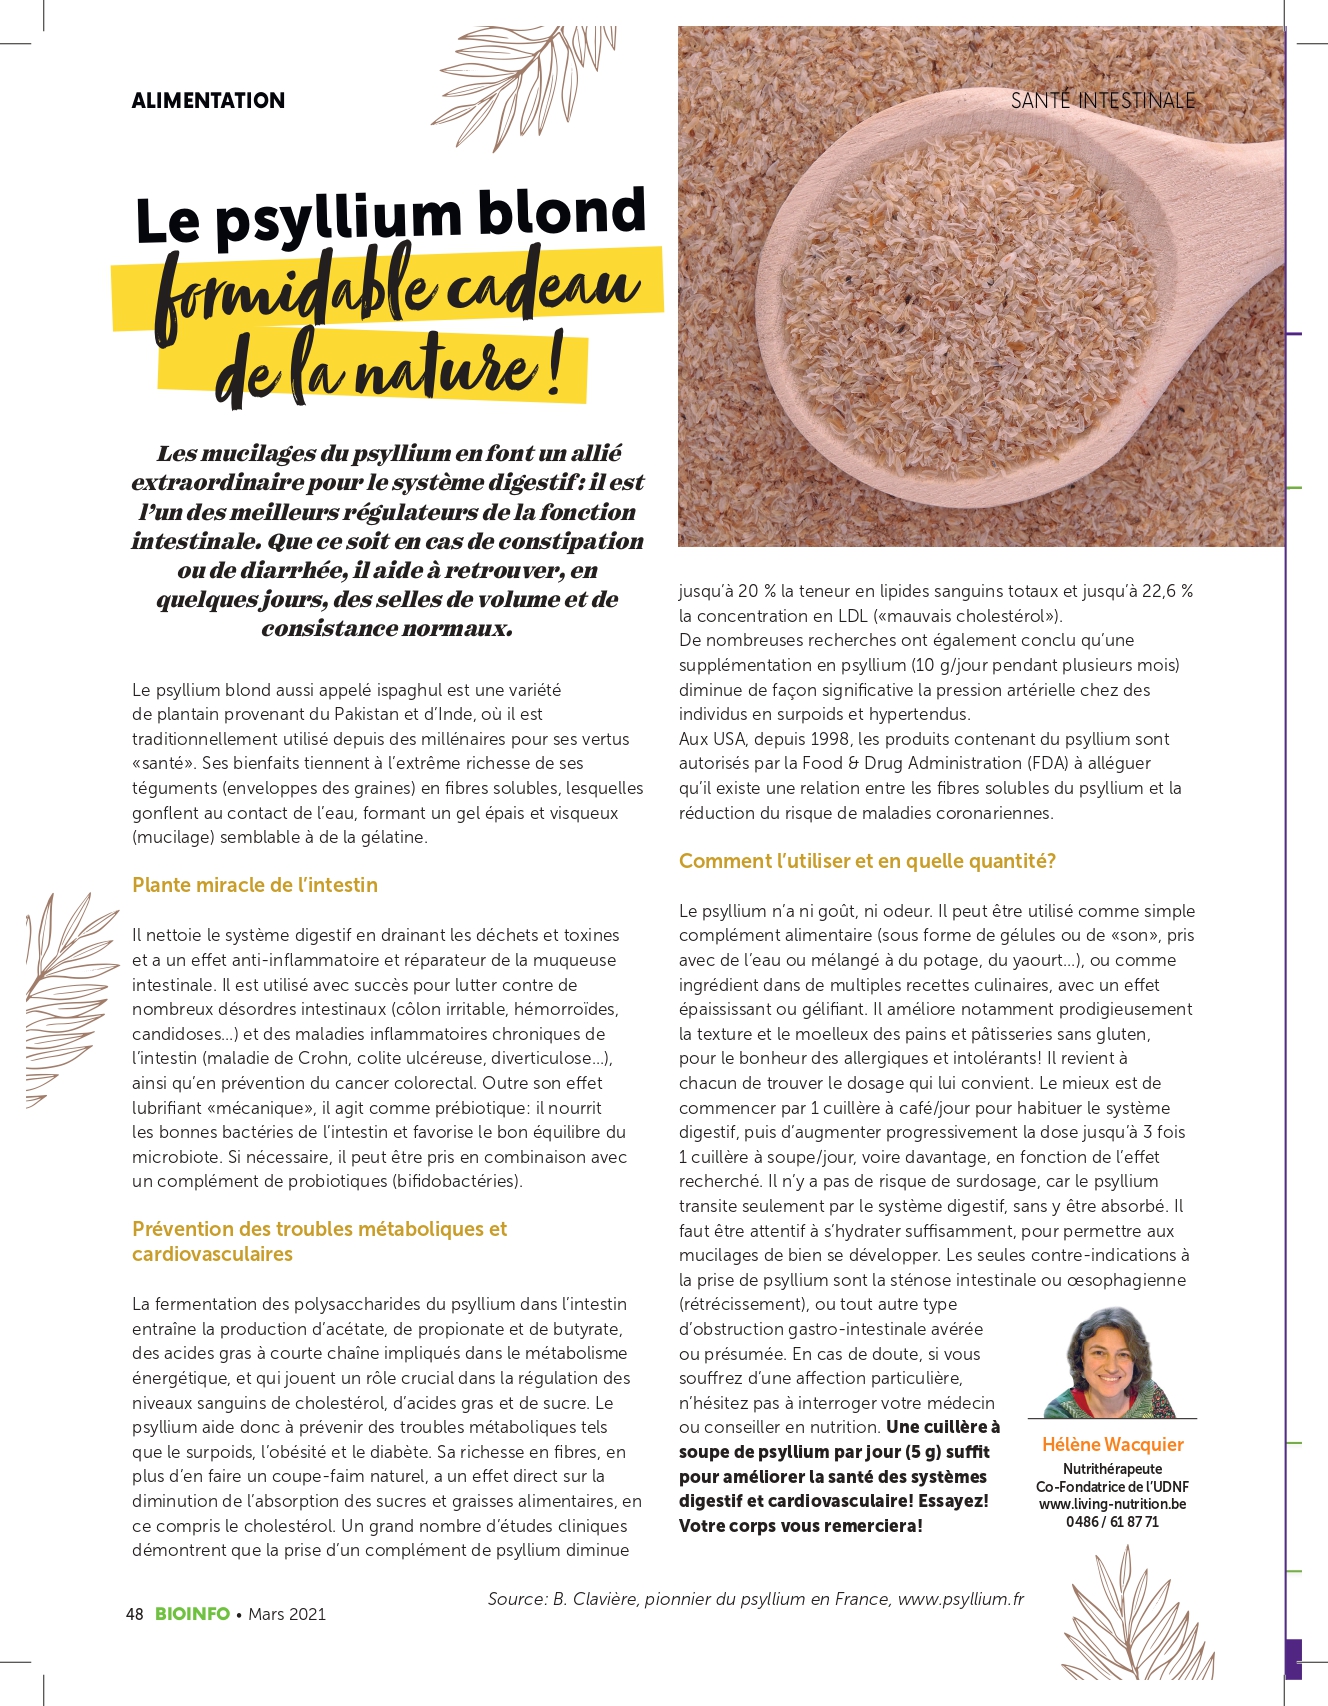 Le psyllium blond : formidable cadeau de la nature! - Living Nutrition %